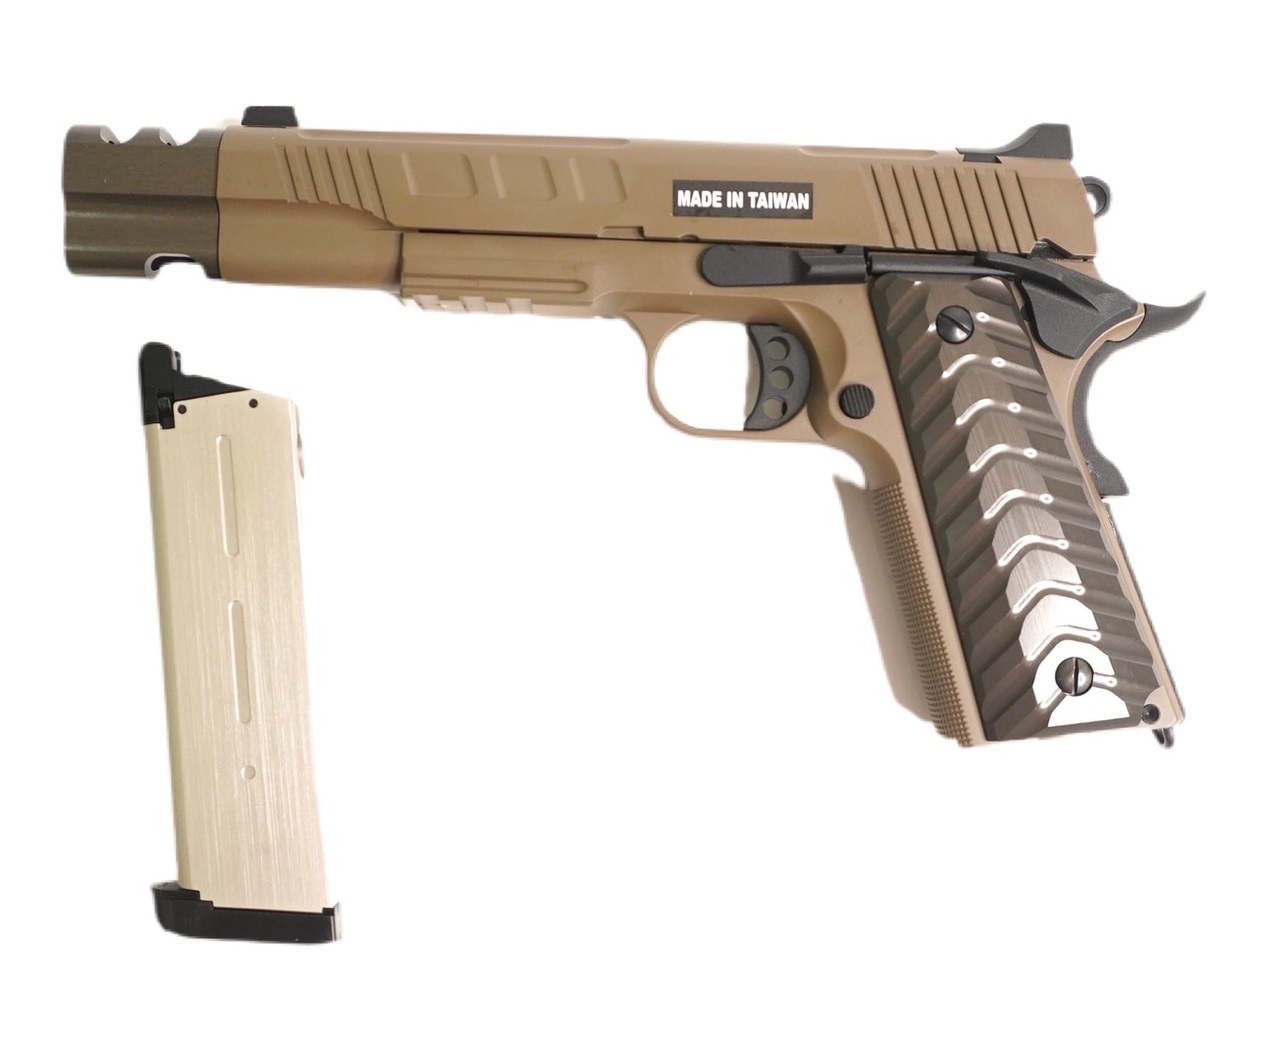 Пистолет страйкбольный (KJW) Colt M1911 удлиненый GBB, GAS, металл, модель - KP-16